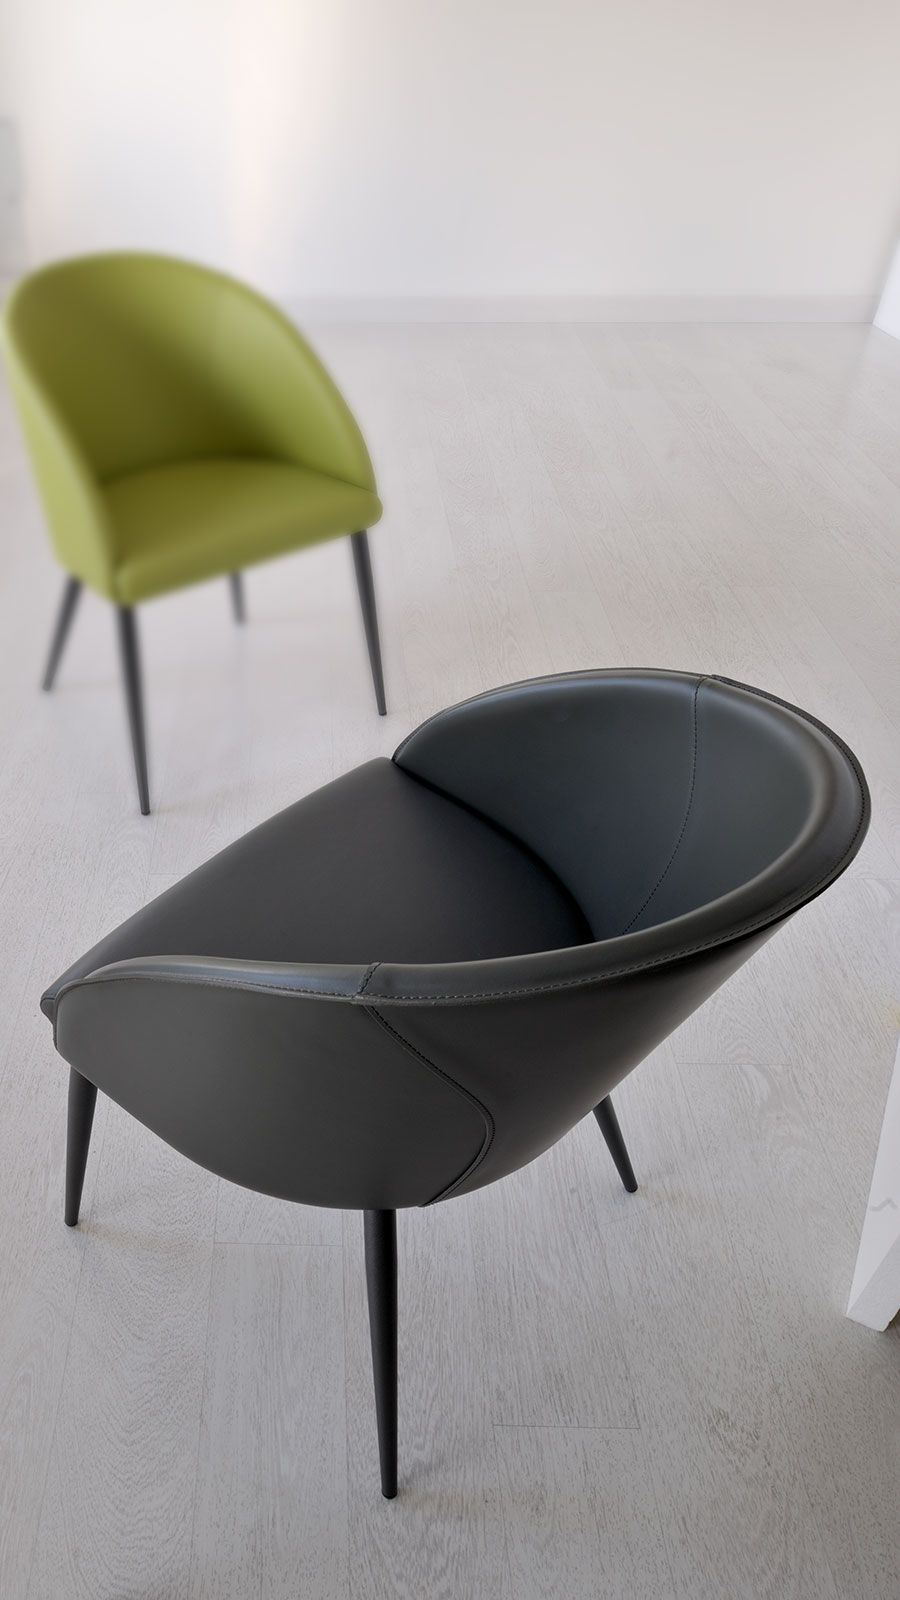 Cuir rigide pour le dossier et cuir souple (ou eco-cuir) pour l'assise. Un fauteuil rembourré pratique et comfortable pour toute utilisation. Vente en ligne